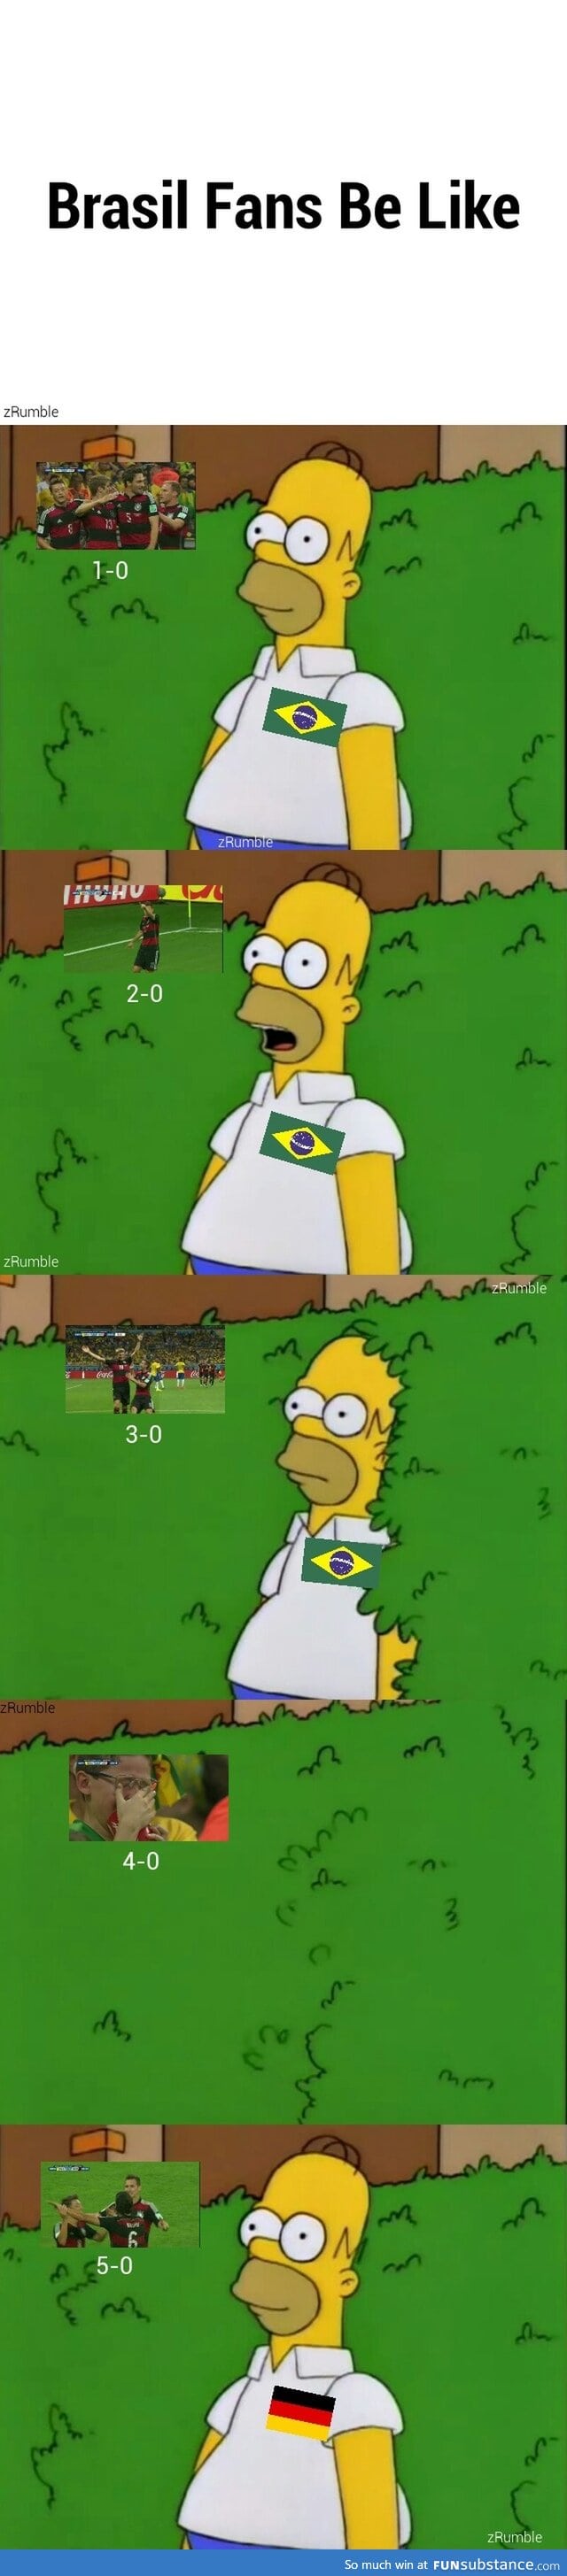 Brazil fans be like